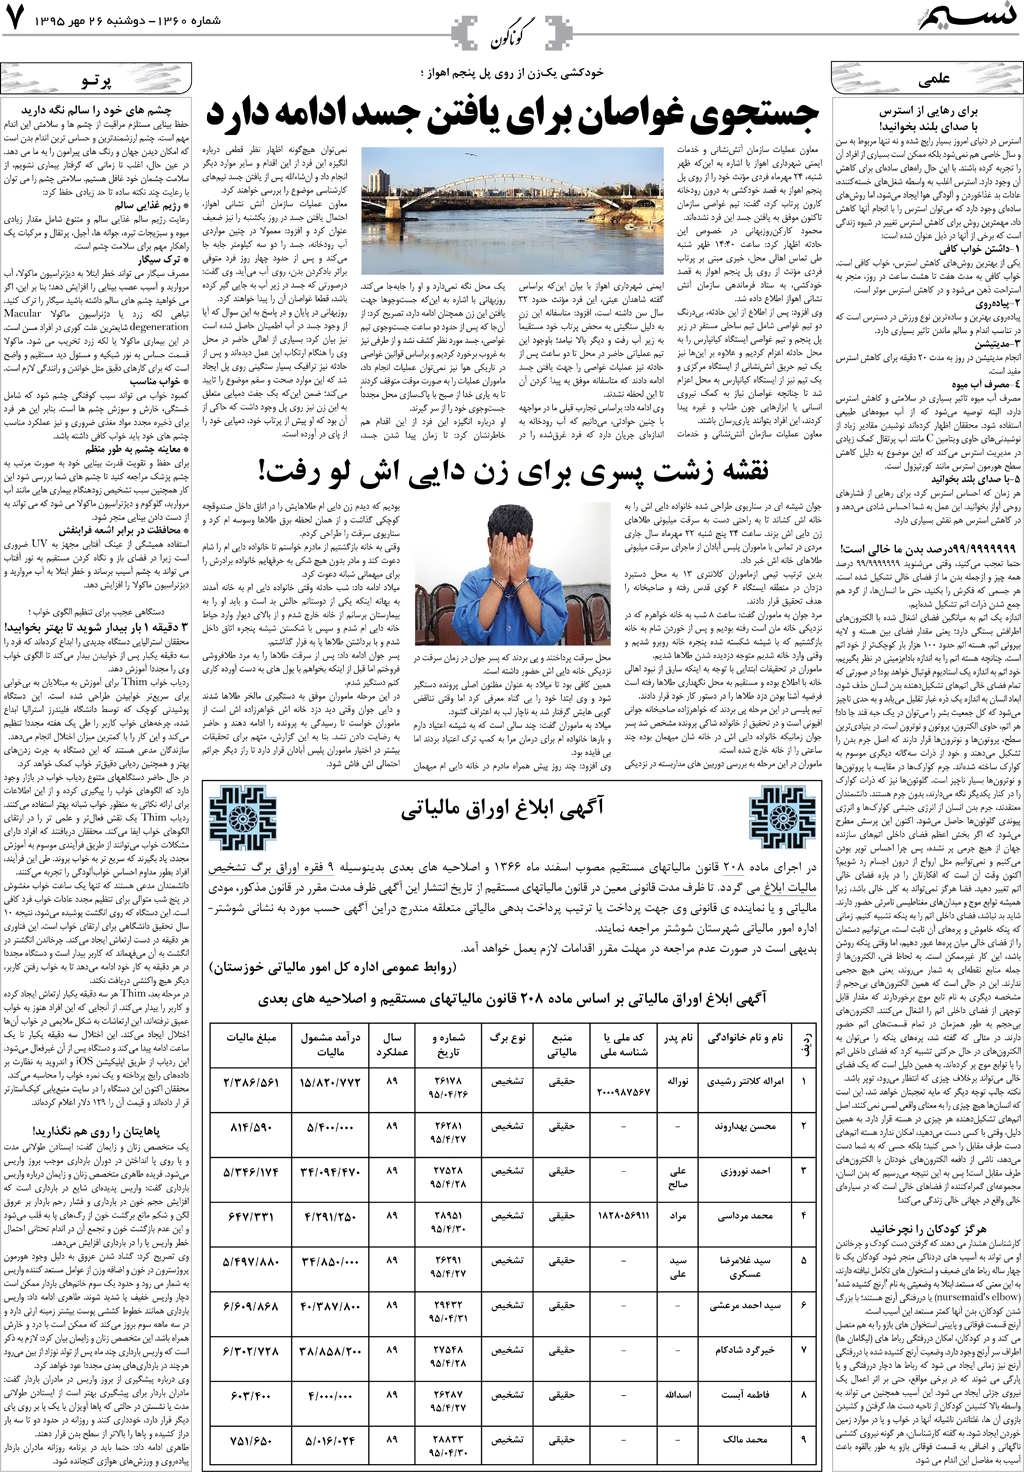 صفحه گوناگون روزنامه نسیم شماره 1360